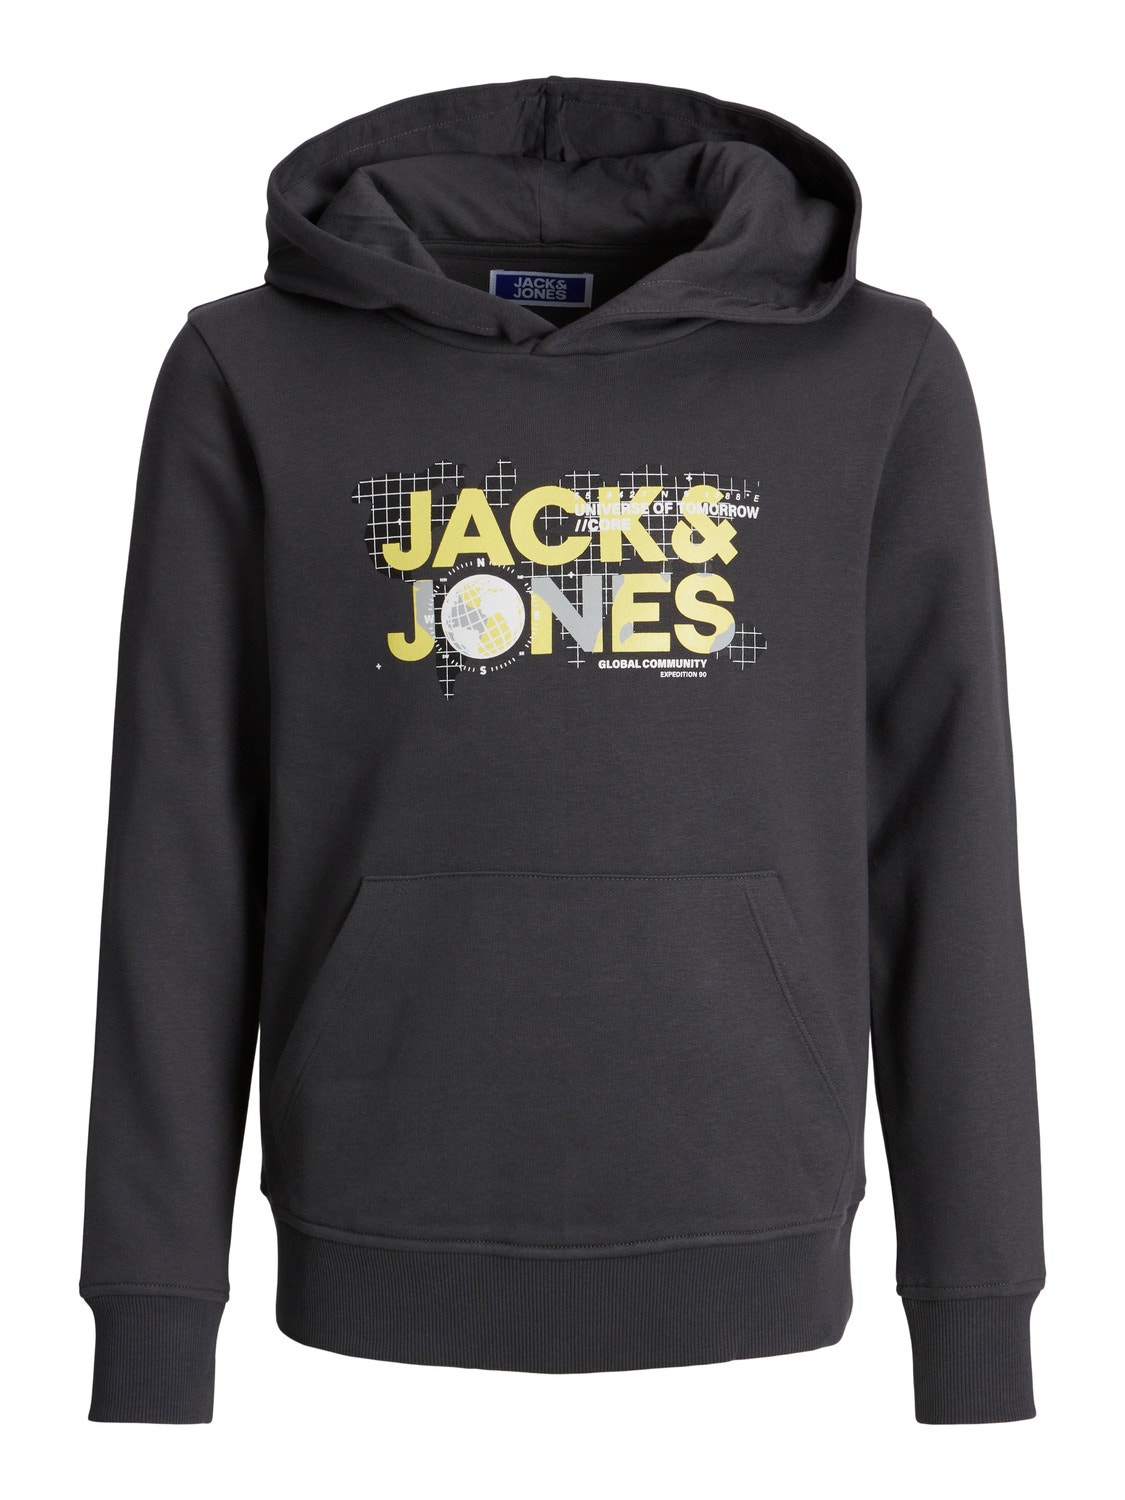 Jack & Jones Z logo Bluza z kapturem Dla chłopców -Asphalt - 12241029